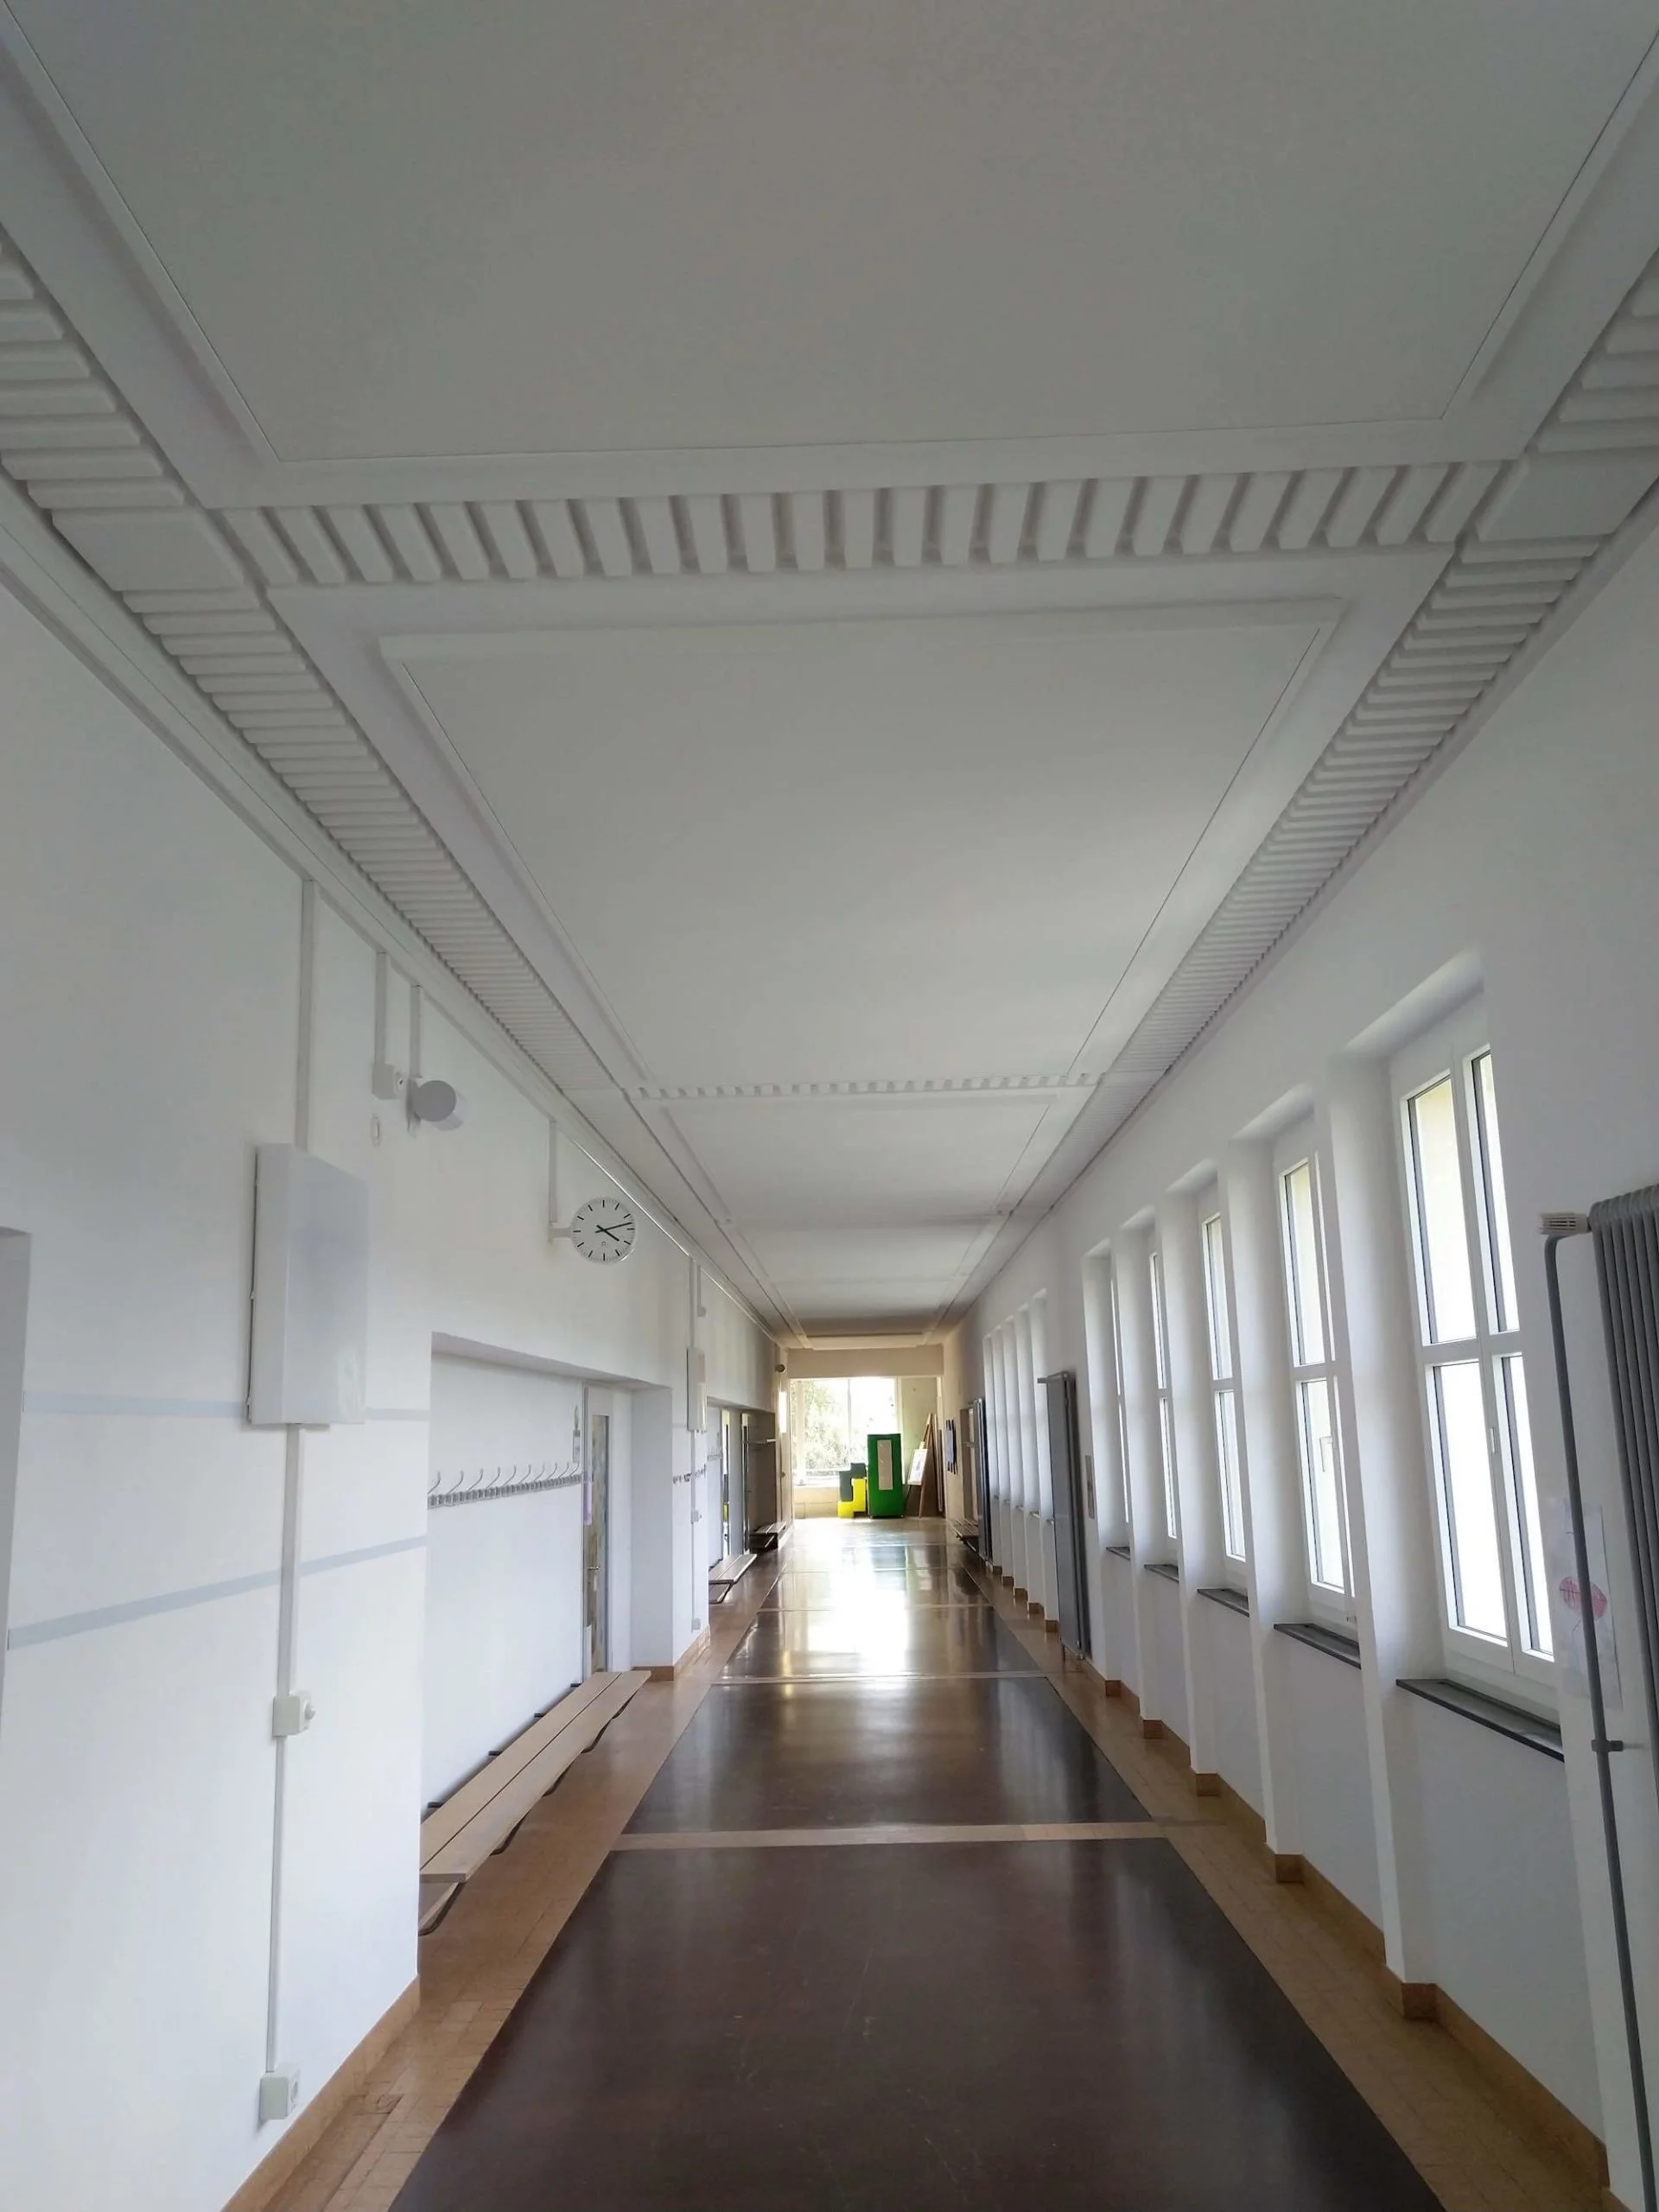 Akustikdecke für bessere Raumakustik in einem Schulhaus, Viktor Wyss AG in Flumenthal, Solothurn